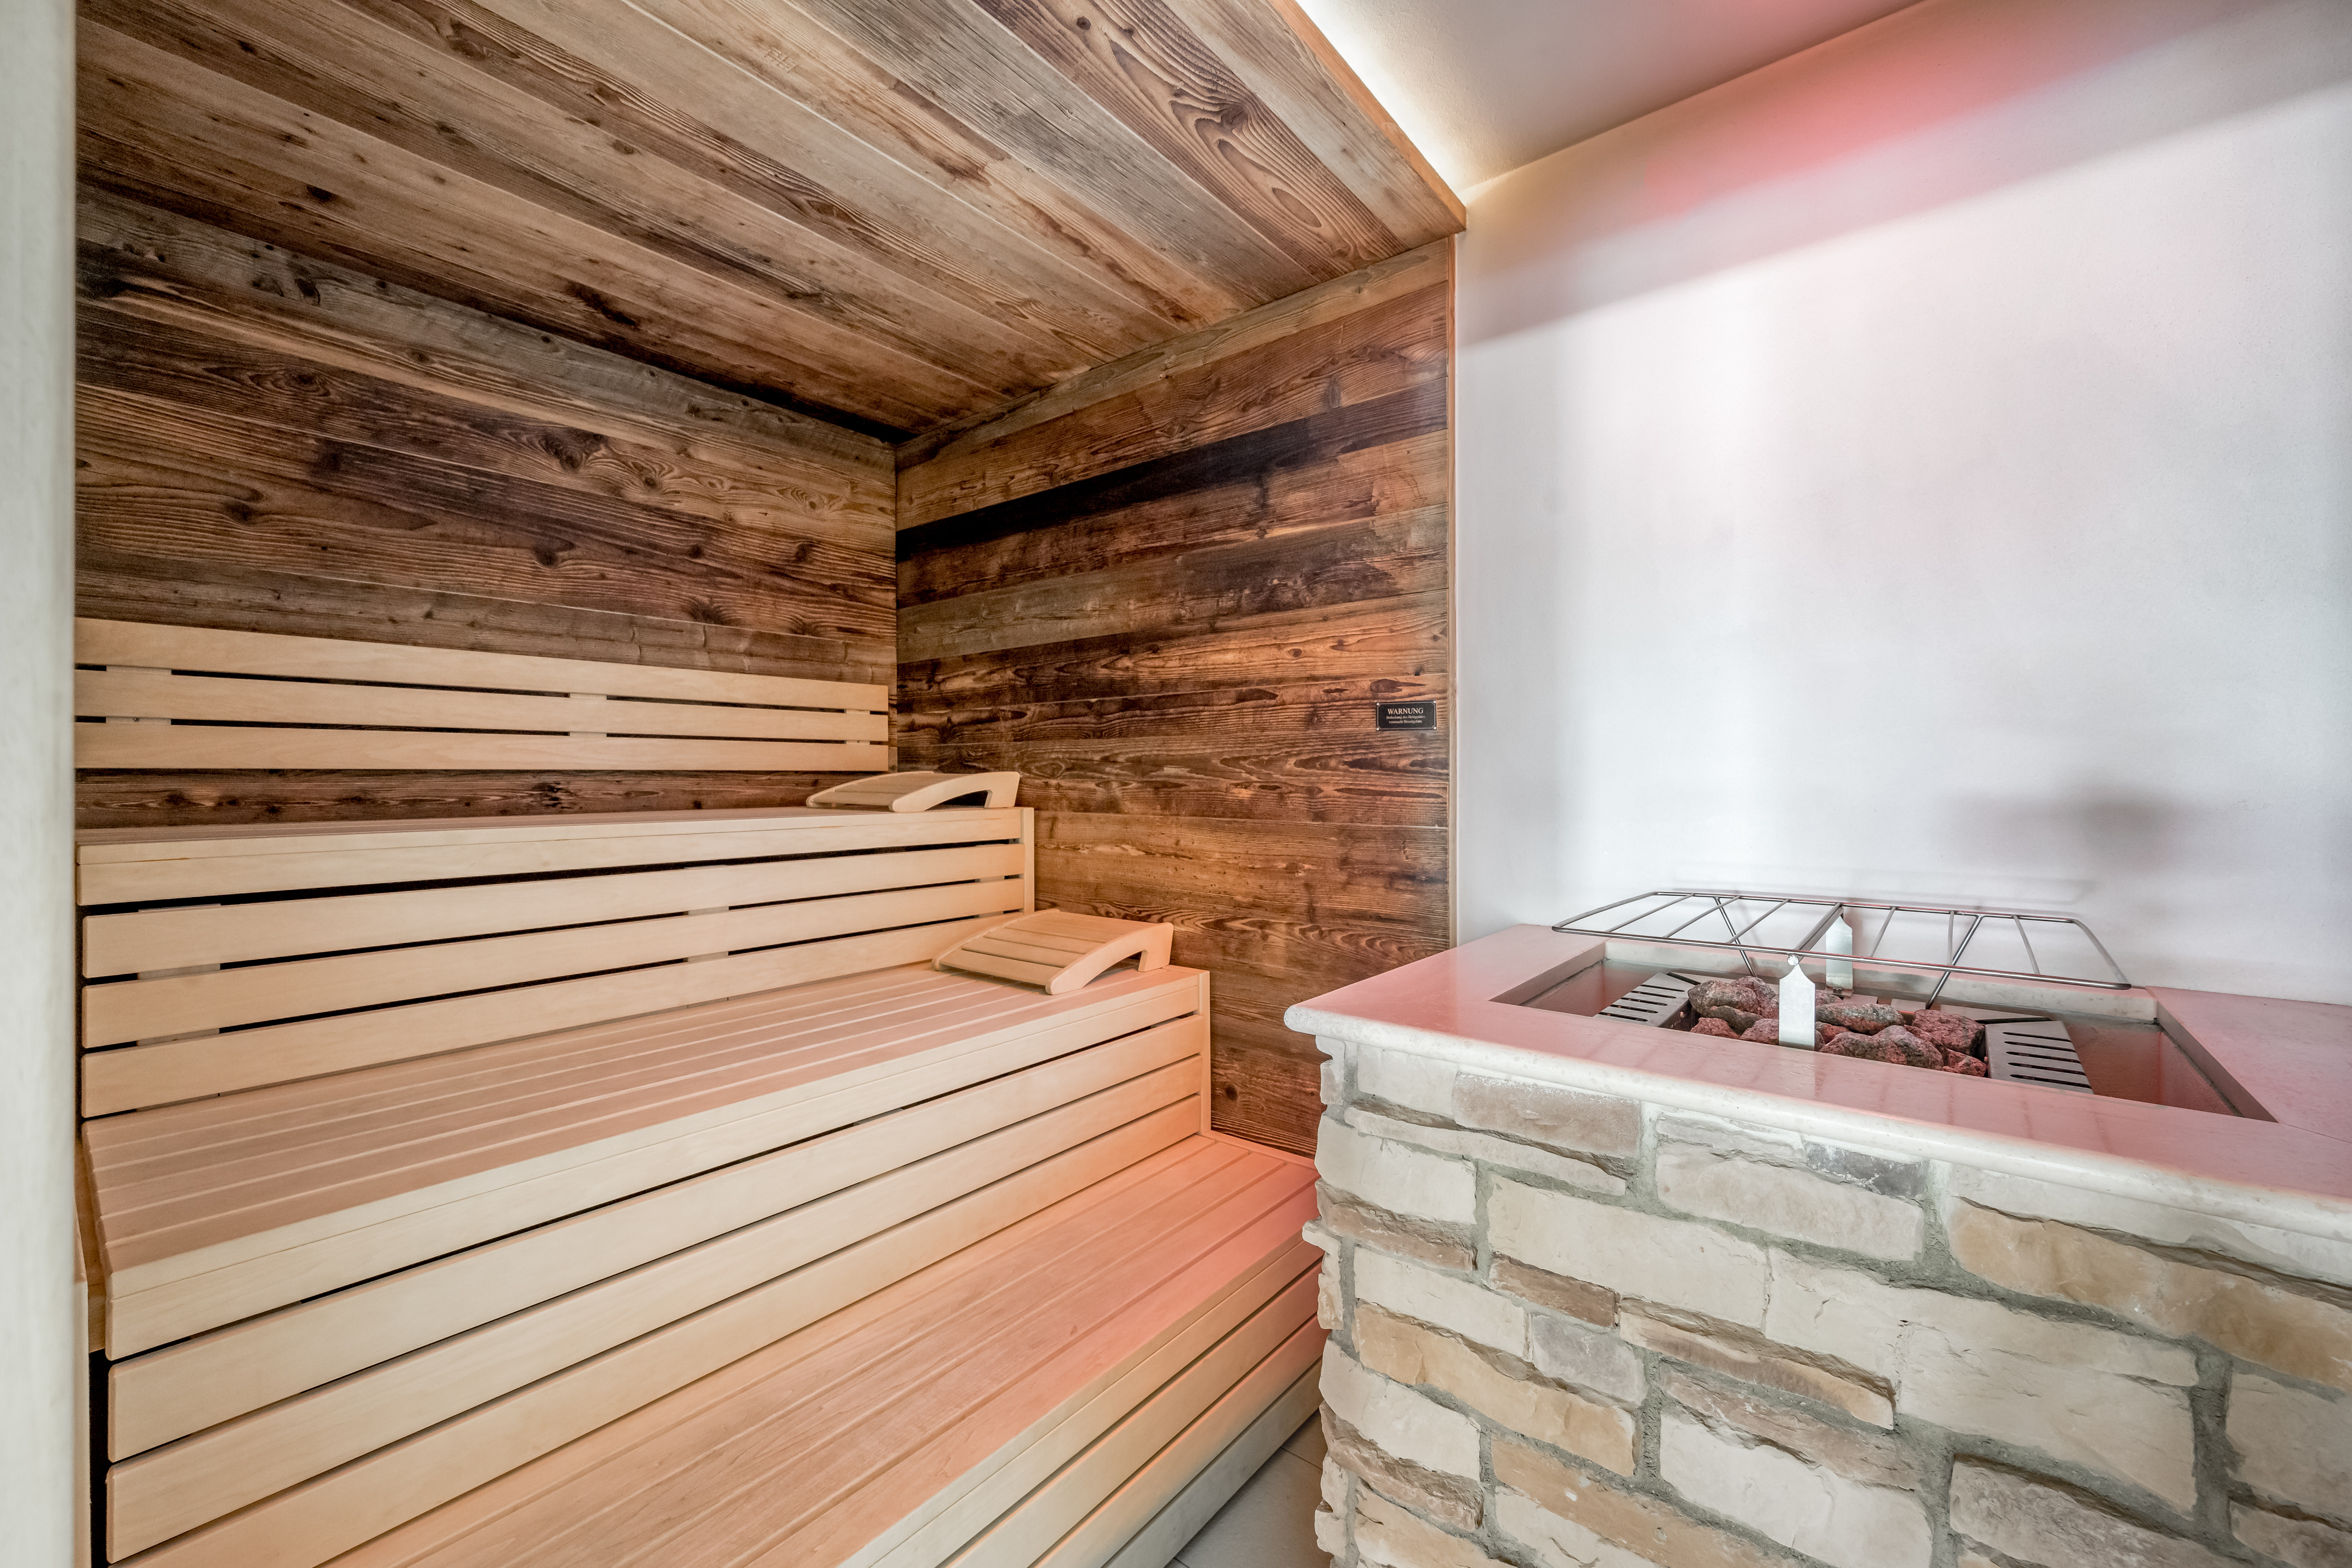 Sauna & Steam baths